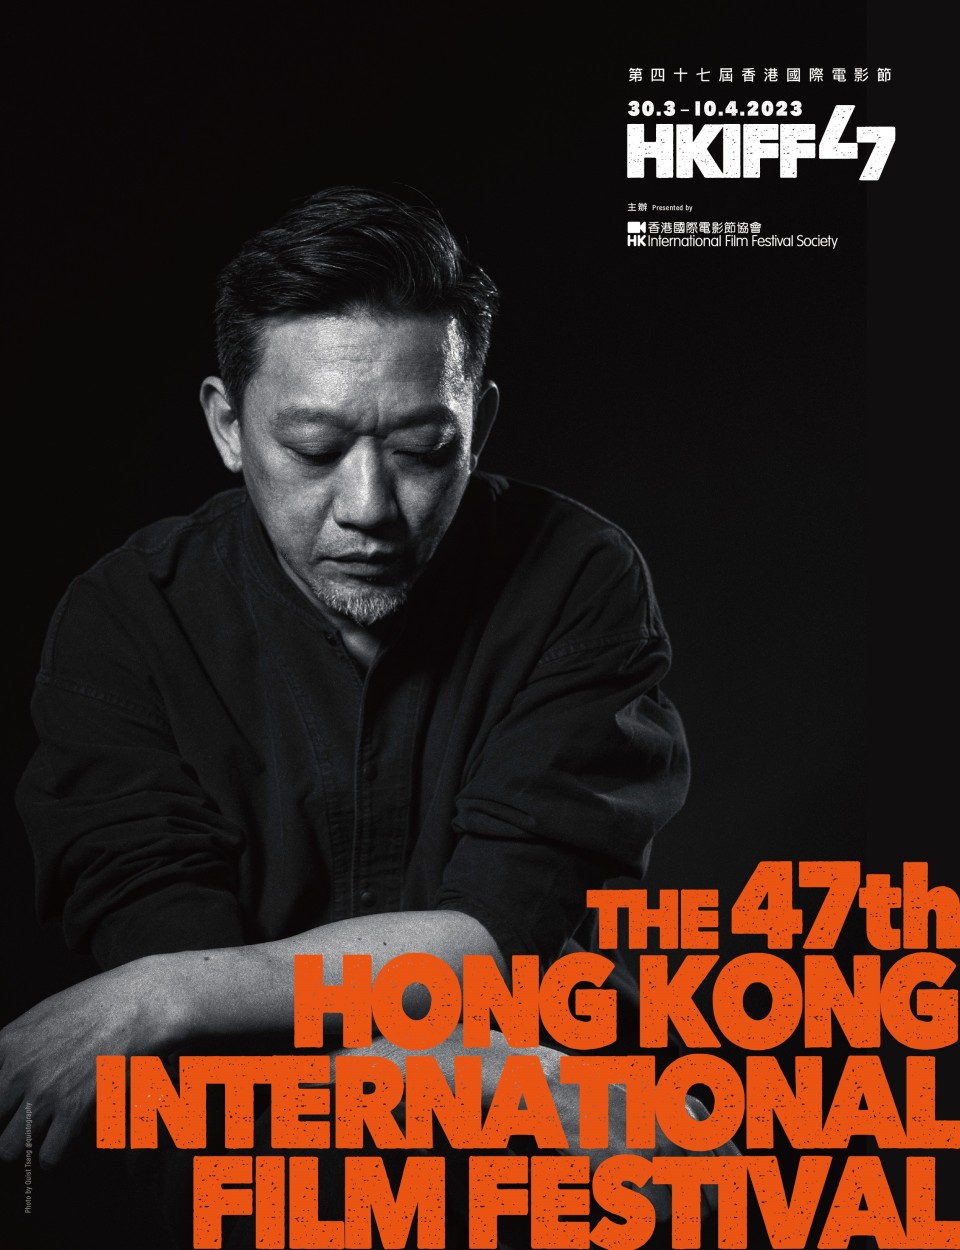 香港國際電影節公布焦點影人鄭保瑞-回顧展放映十二部作品